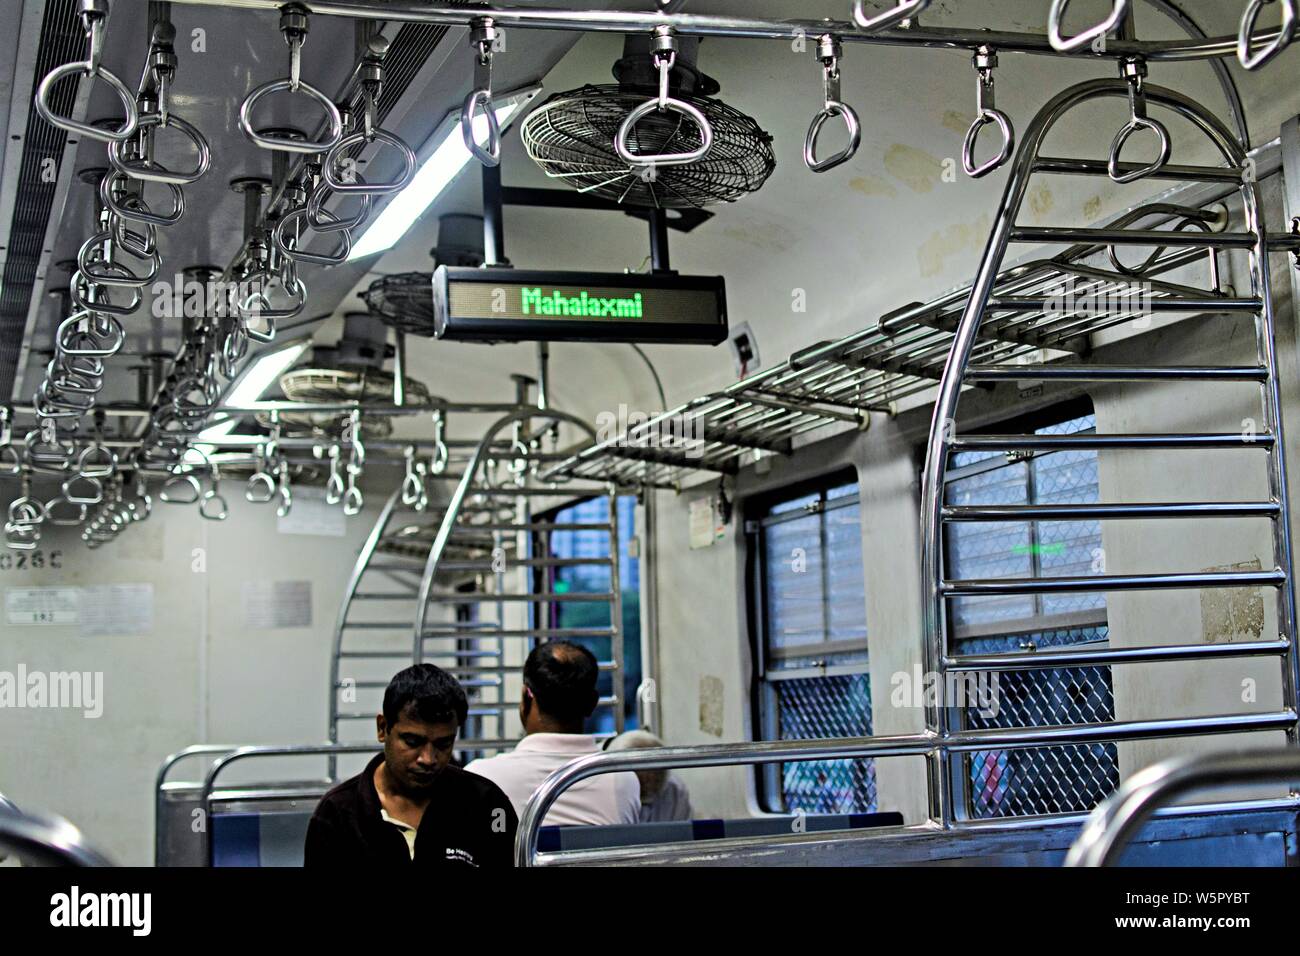 indicator inside local train Mahalaxmi Railway Station Mumbai Maharashtra India Asia Stock Photo